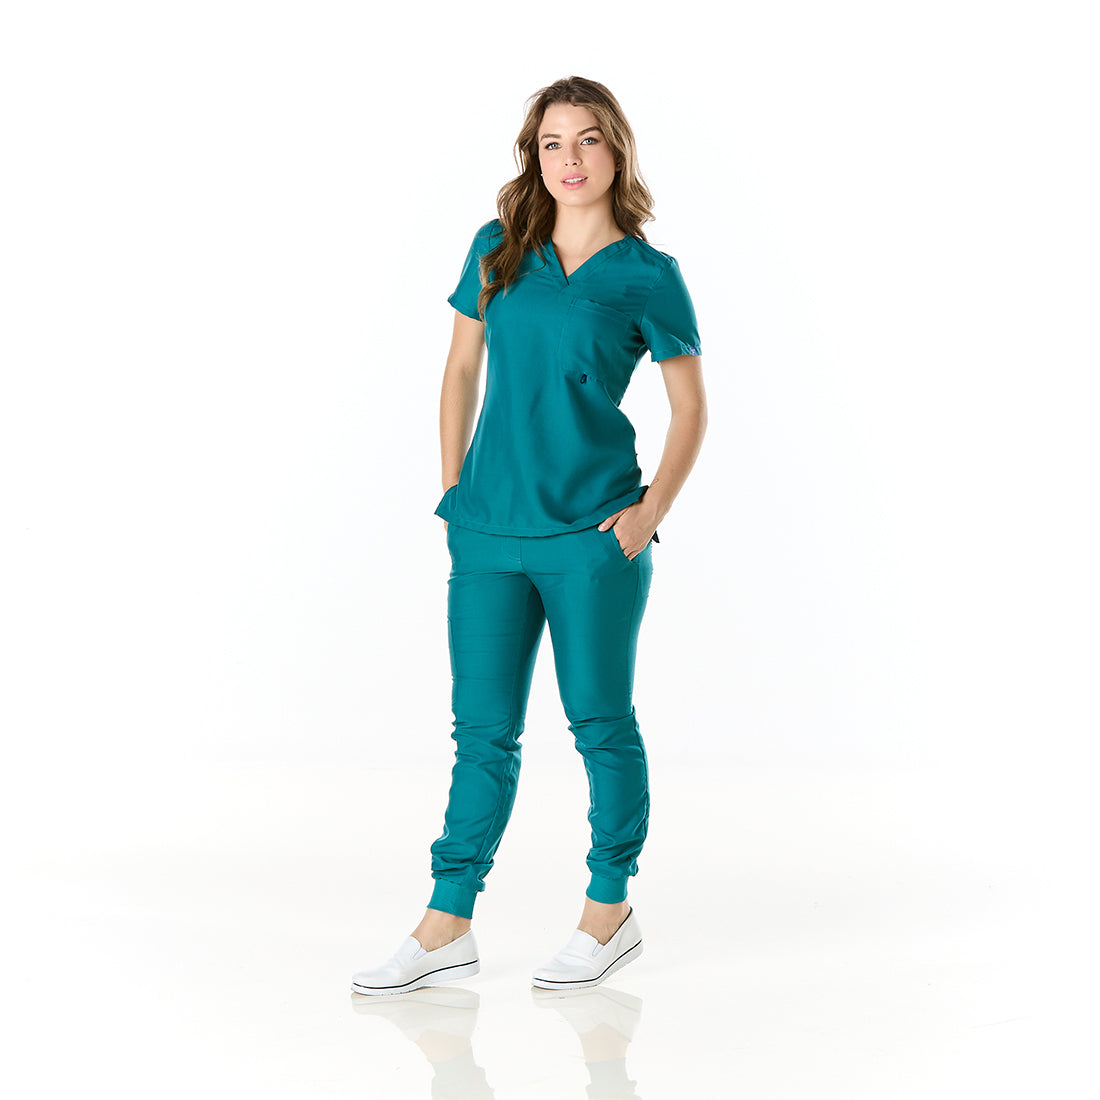 Mujer vistiendo conjunto sanitario color azul turquesa con escote en v y bolsa con cinta portagafete